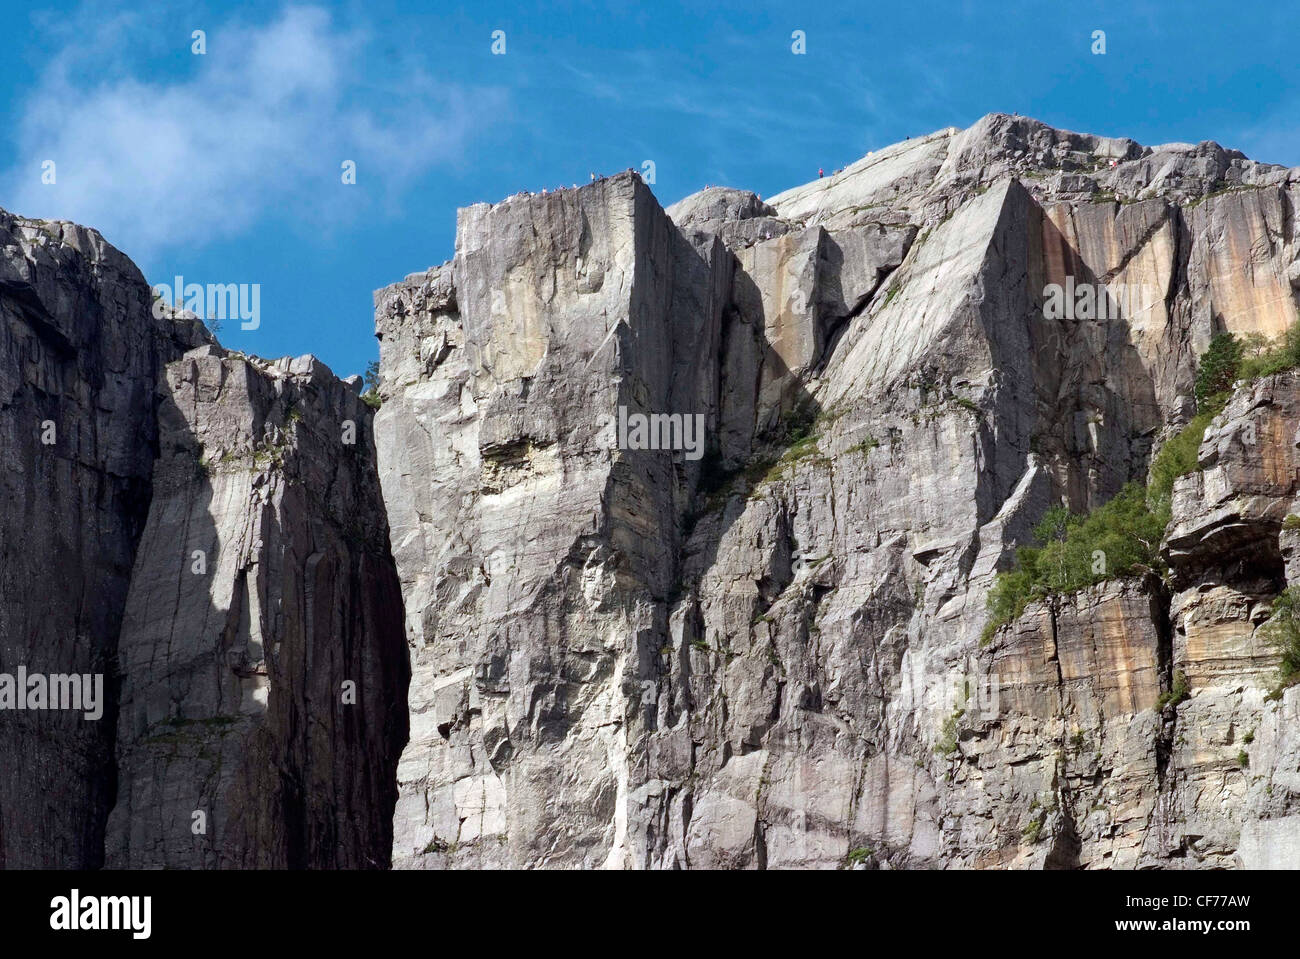 Norwegen Lysefjord Teast von Stavanger, jenseits der Høgsfjordes. Steilen Felsen Wände steigen auf über 3000ft über dem Fjord. Preikestolen. Stockfoto